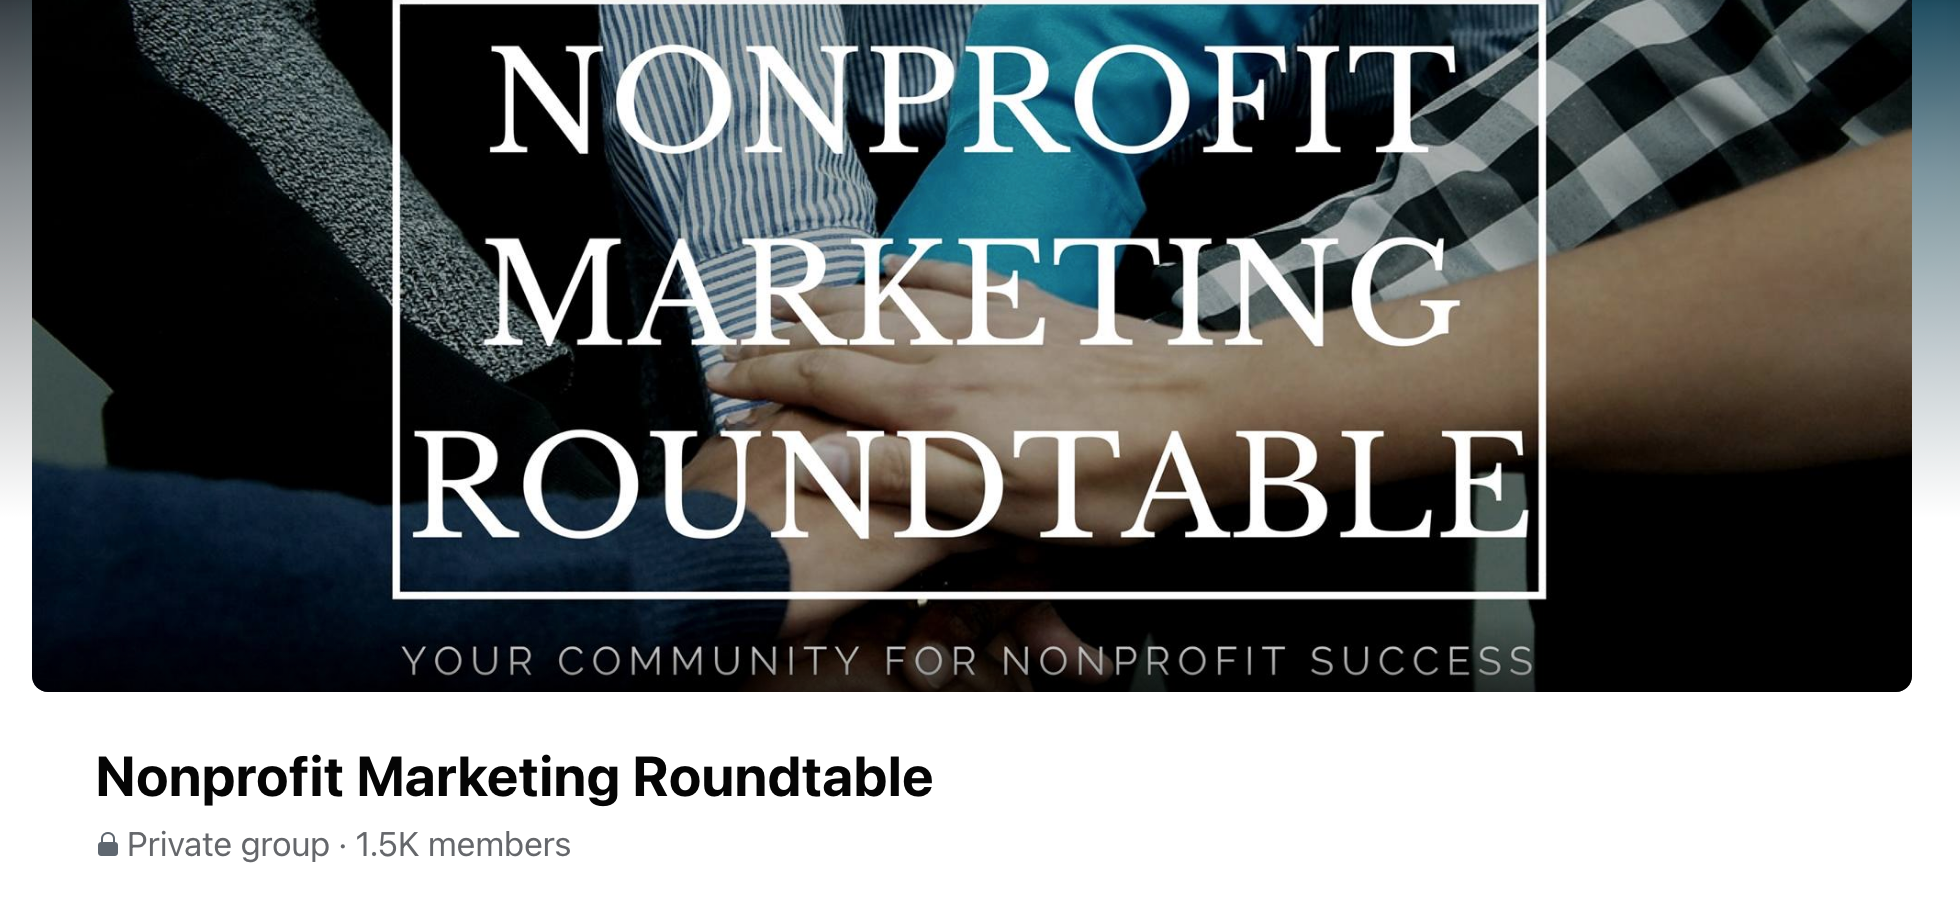 Nonprofit Marketing Roundtable 